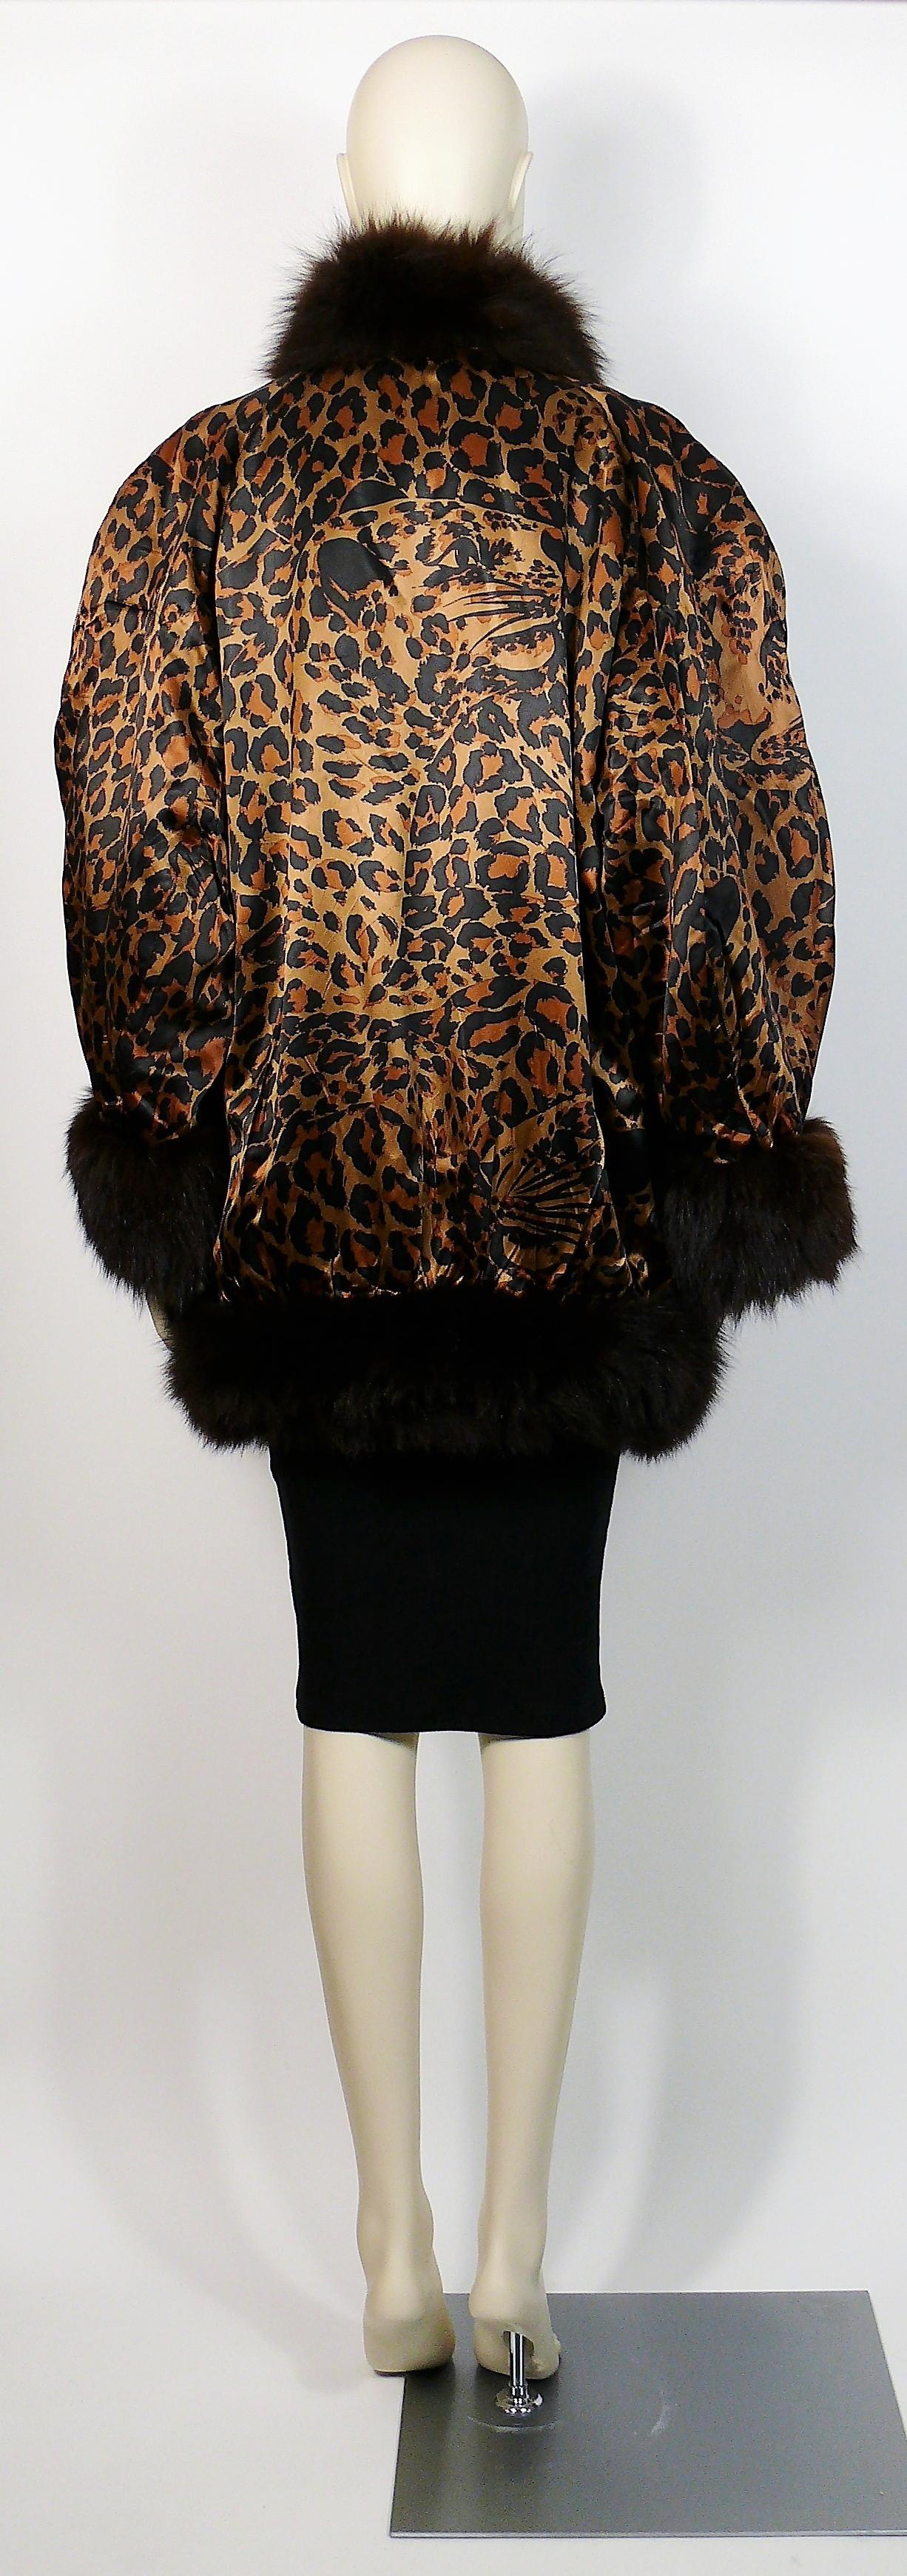 Yves Saint Laurent YSL Vintage Iconic Leopard Print Coat 1